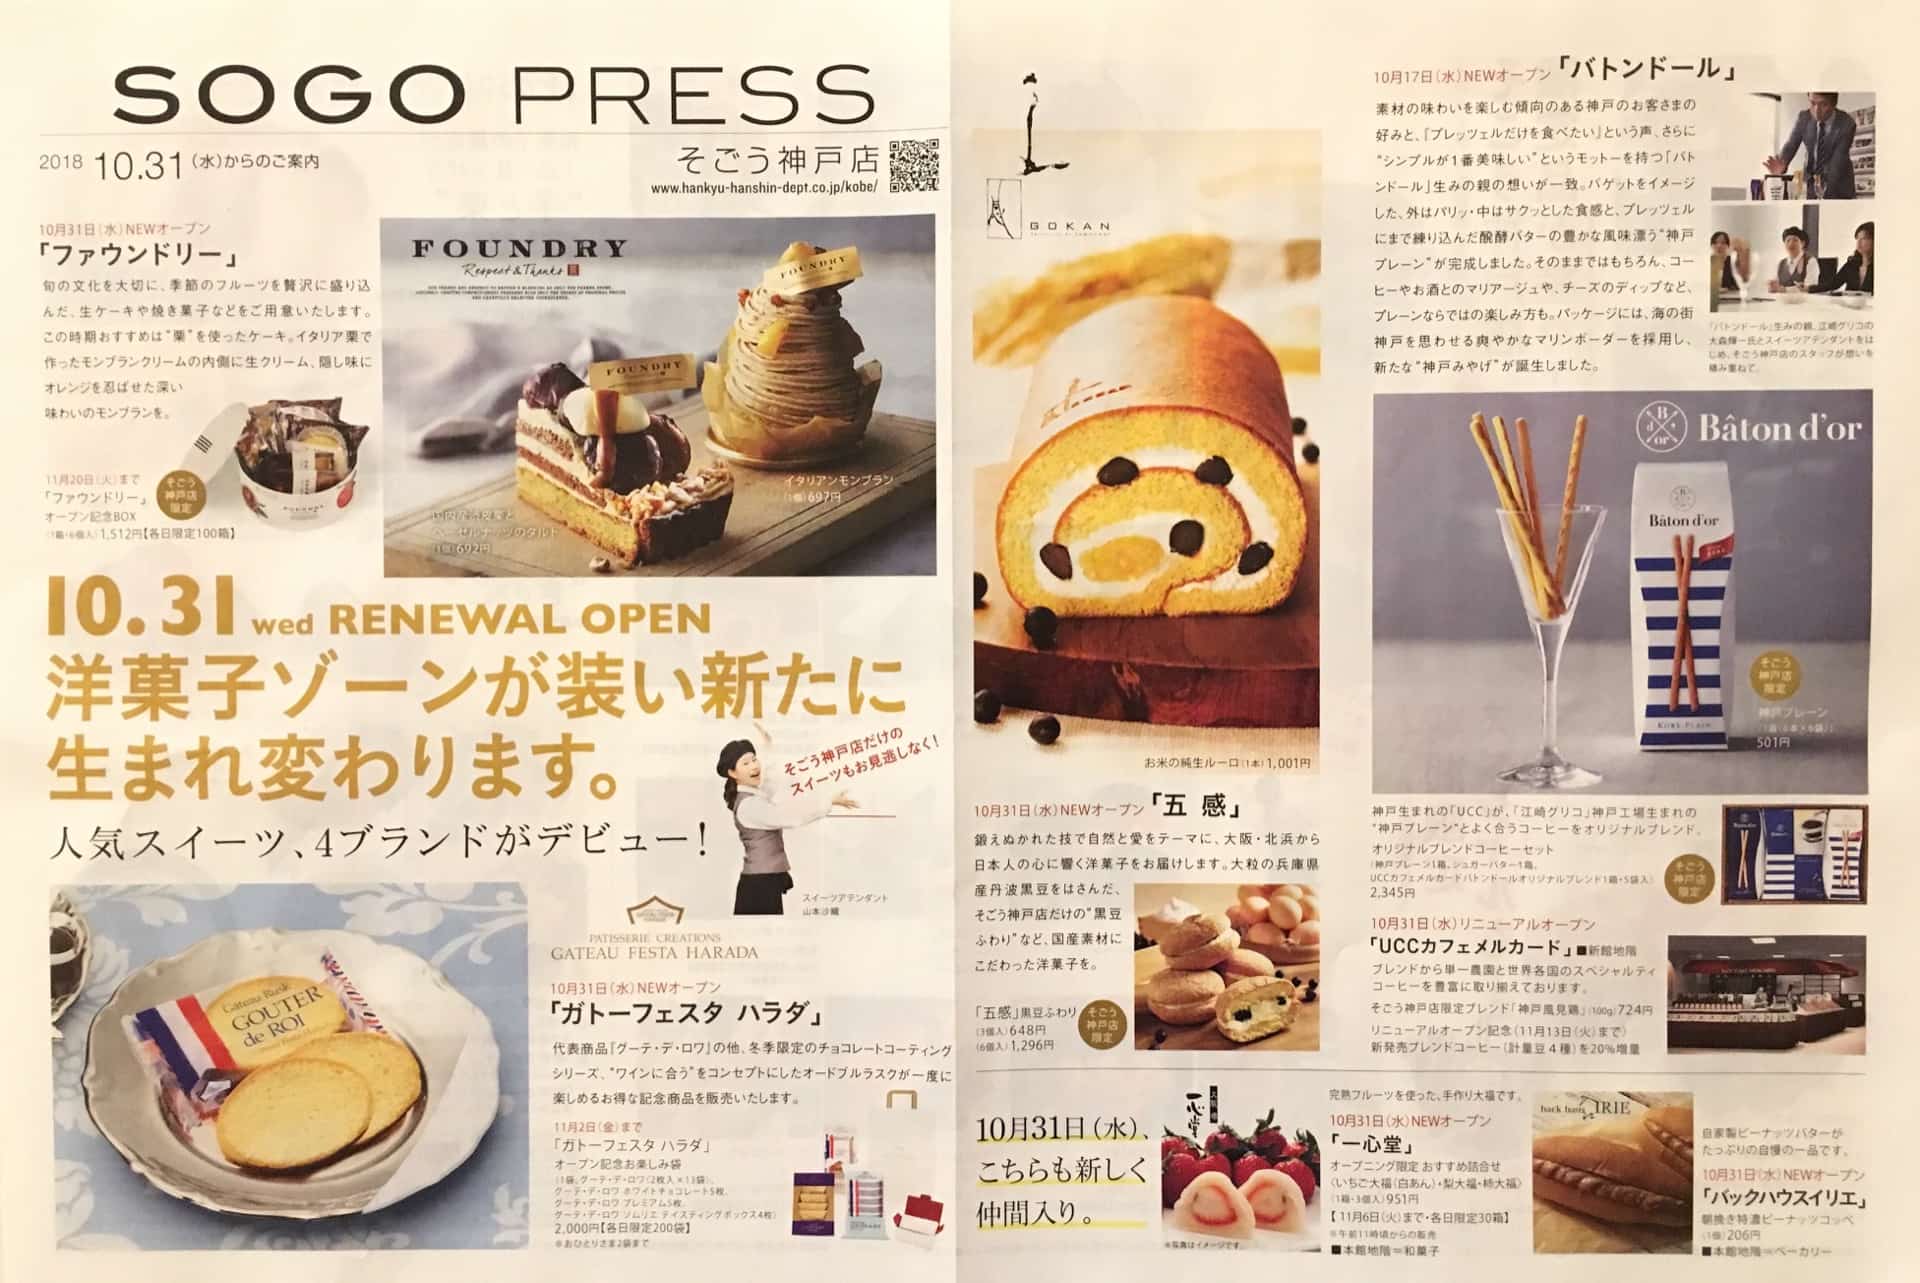 10月31日 そごう神戸店のデパ地下がリニューアルオープン 人気スイーツ ケーキの新店も登場